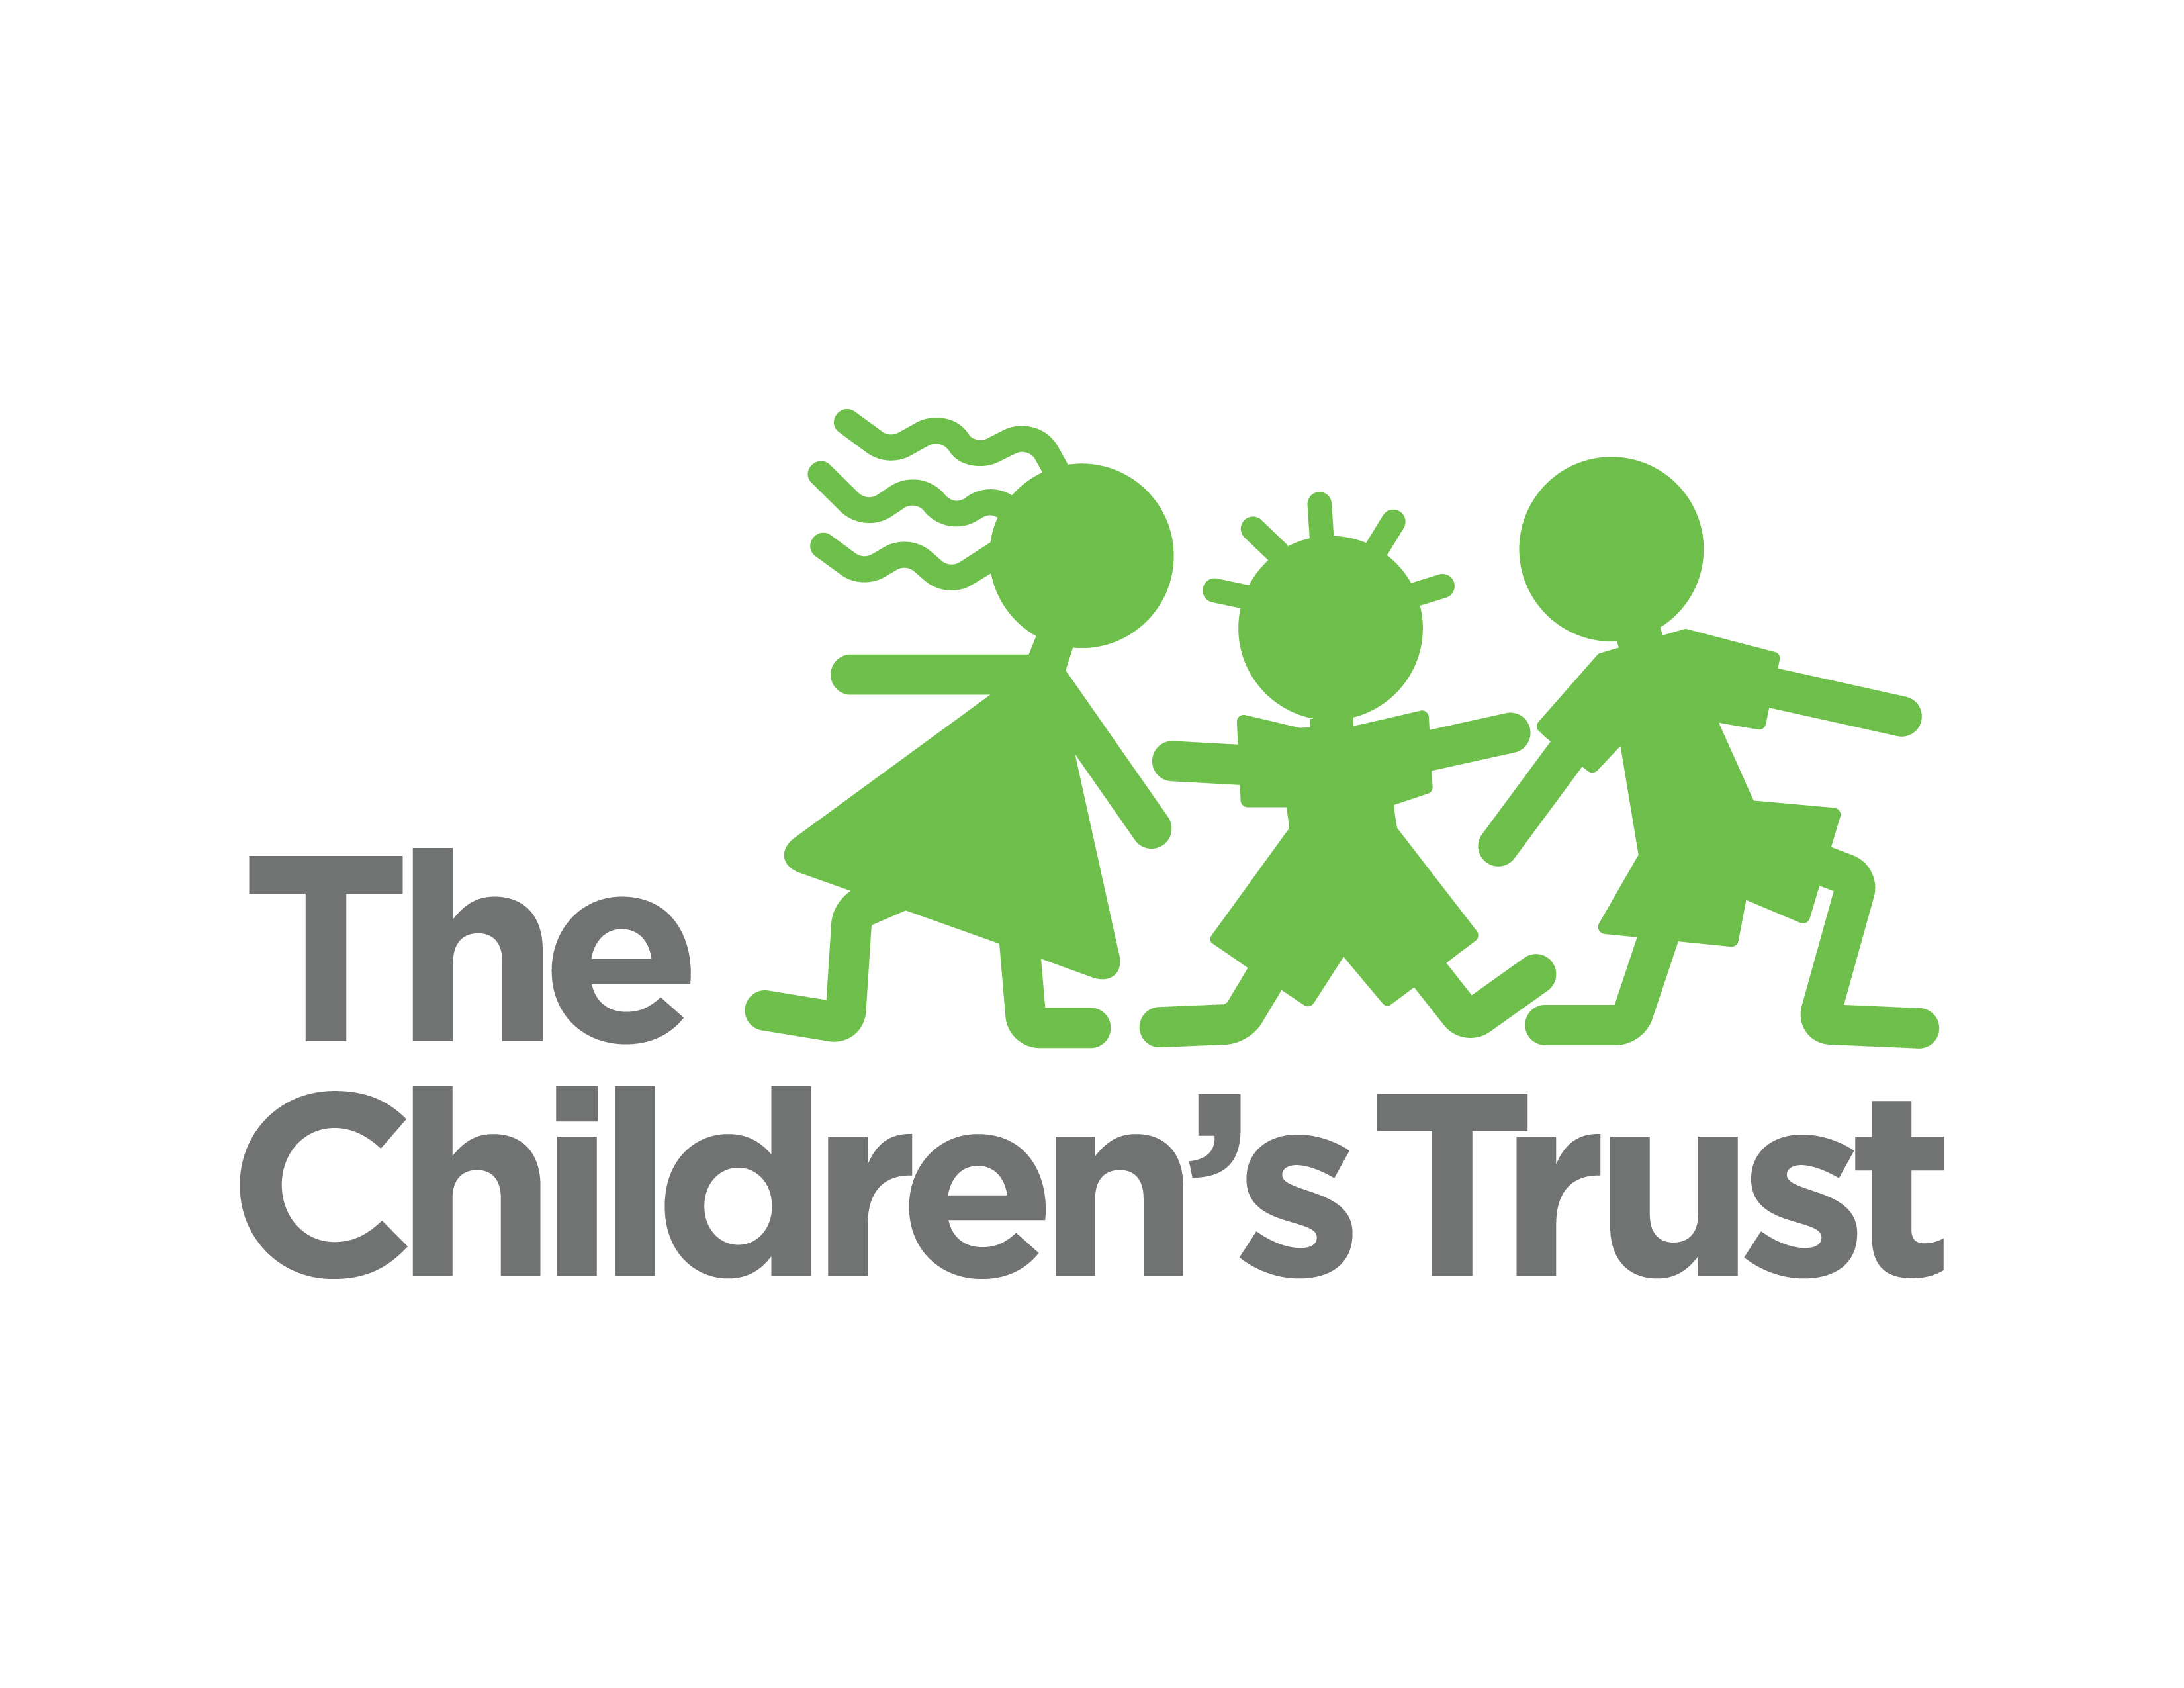 The Children’s Trust